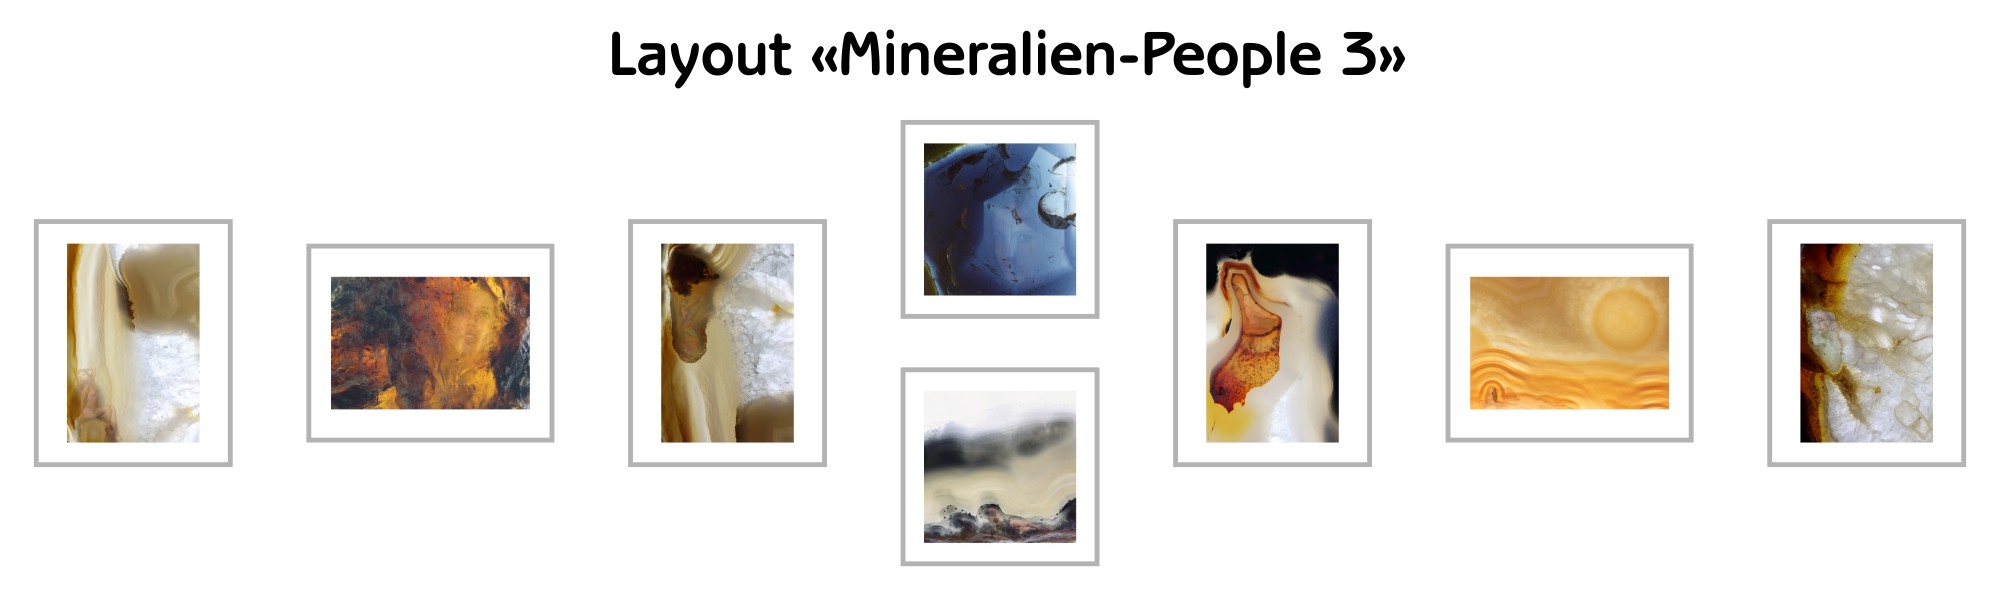 image-10217783-Layout-Mineralien-People-3-8f14e.jpg